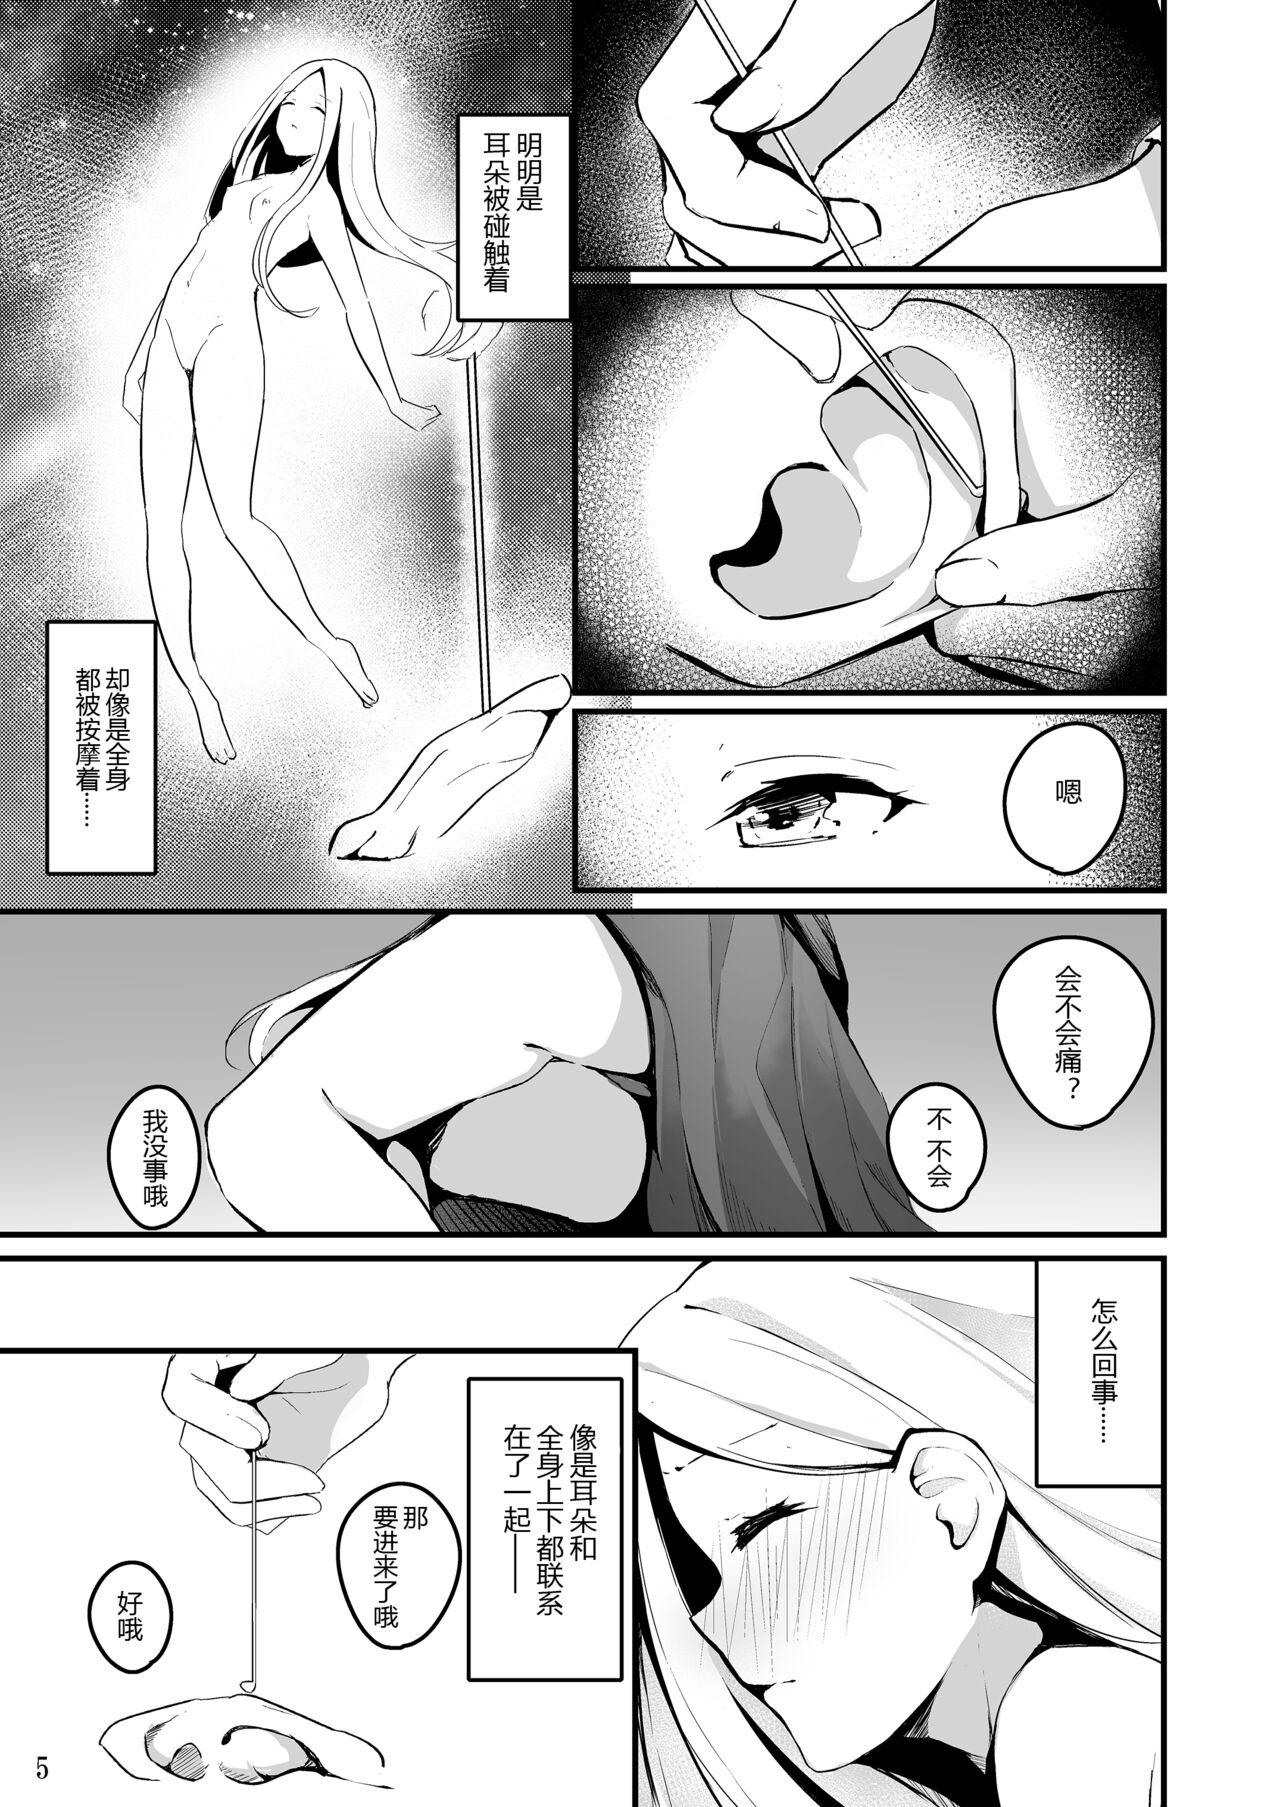 Nut Koyoi wa Tsuki o Nagamete Mimikaki demo Shite Watashi no Hiza de Nemasen ka - Fate grand order Friends - Page 9